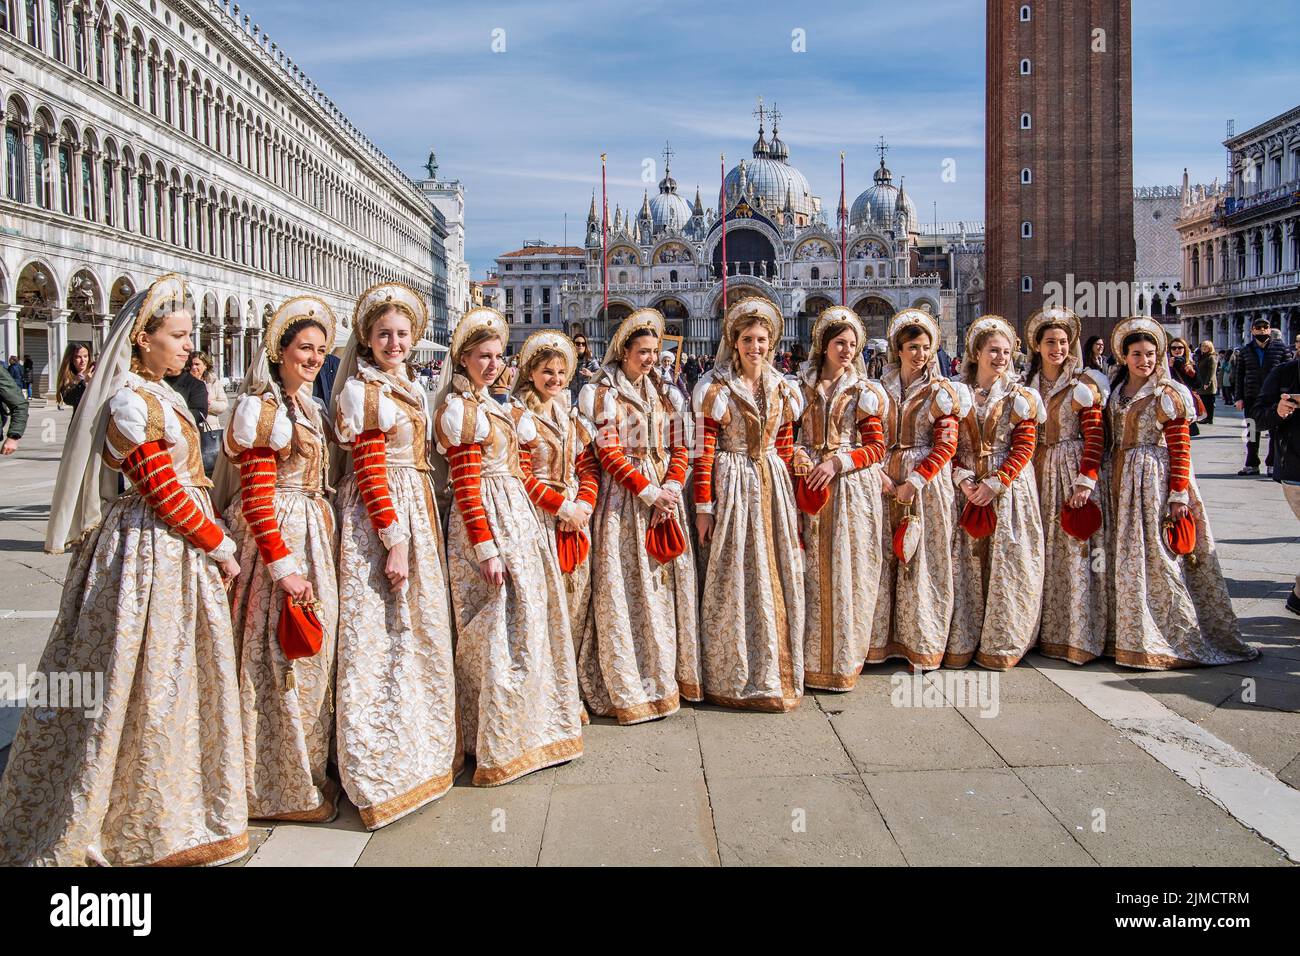 Gruppe von Frauen in Renaissance-Gewändern auf dem Markusplatz mit der Markusbasilika, Venedig, Venetien, Adria, Norditalien, Italien Stockfoto